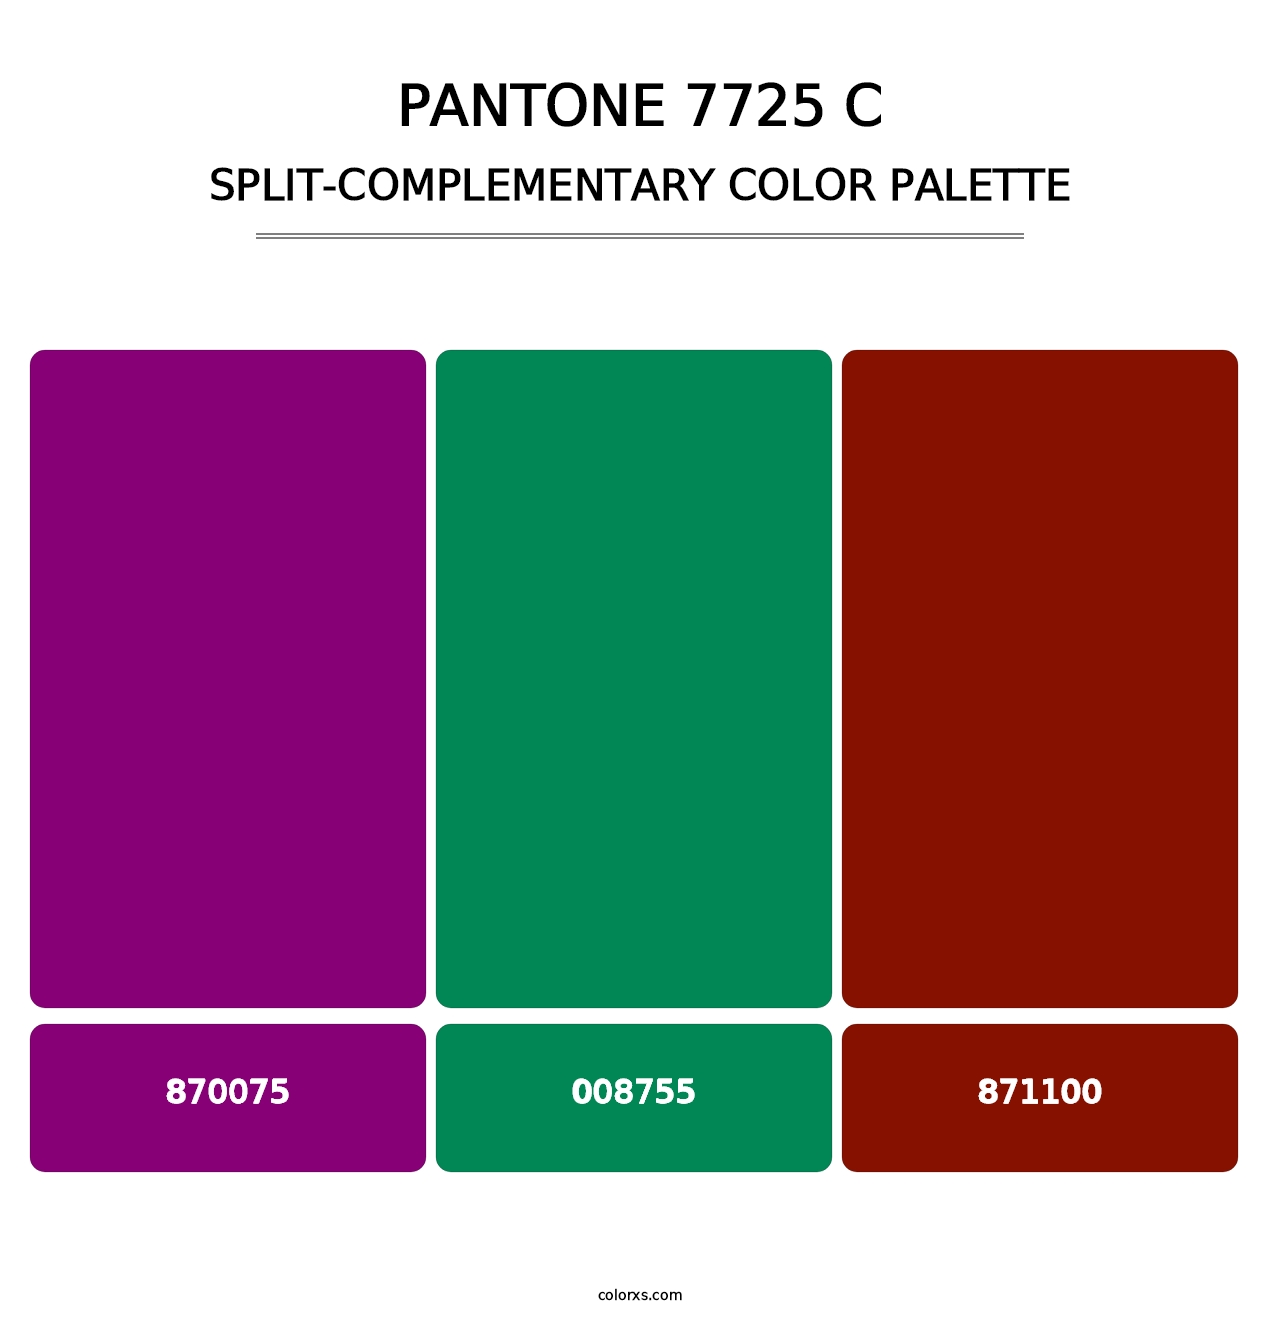 PANTONE 7725 C - Split-Complementary Color Palette